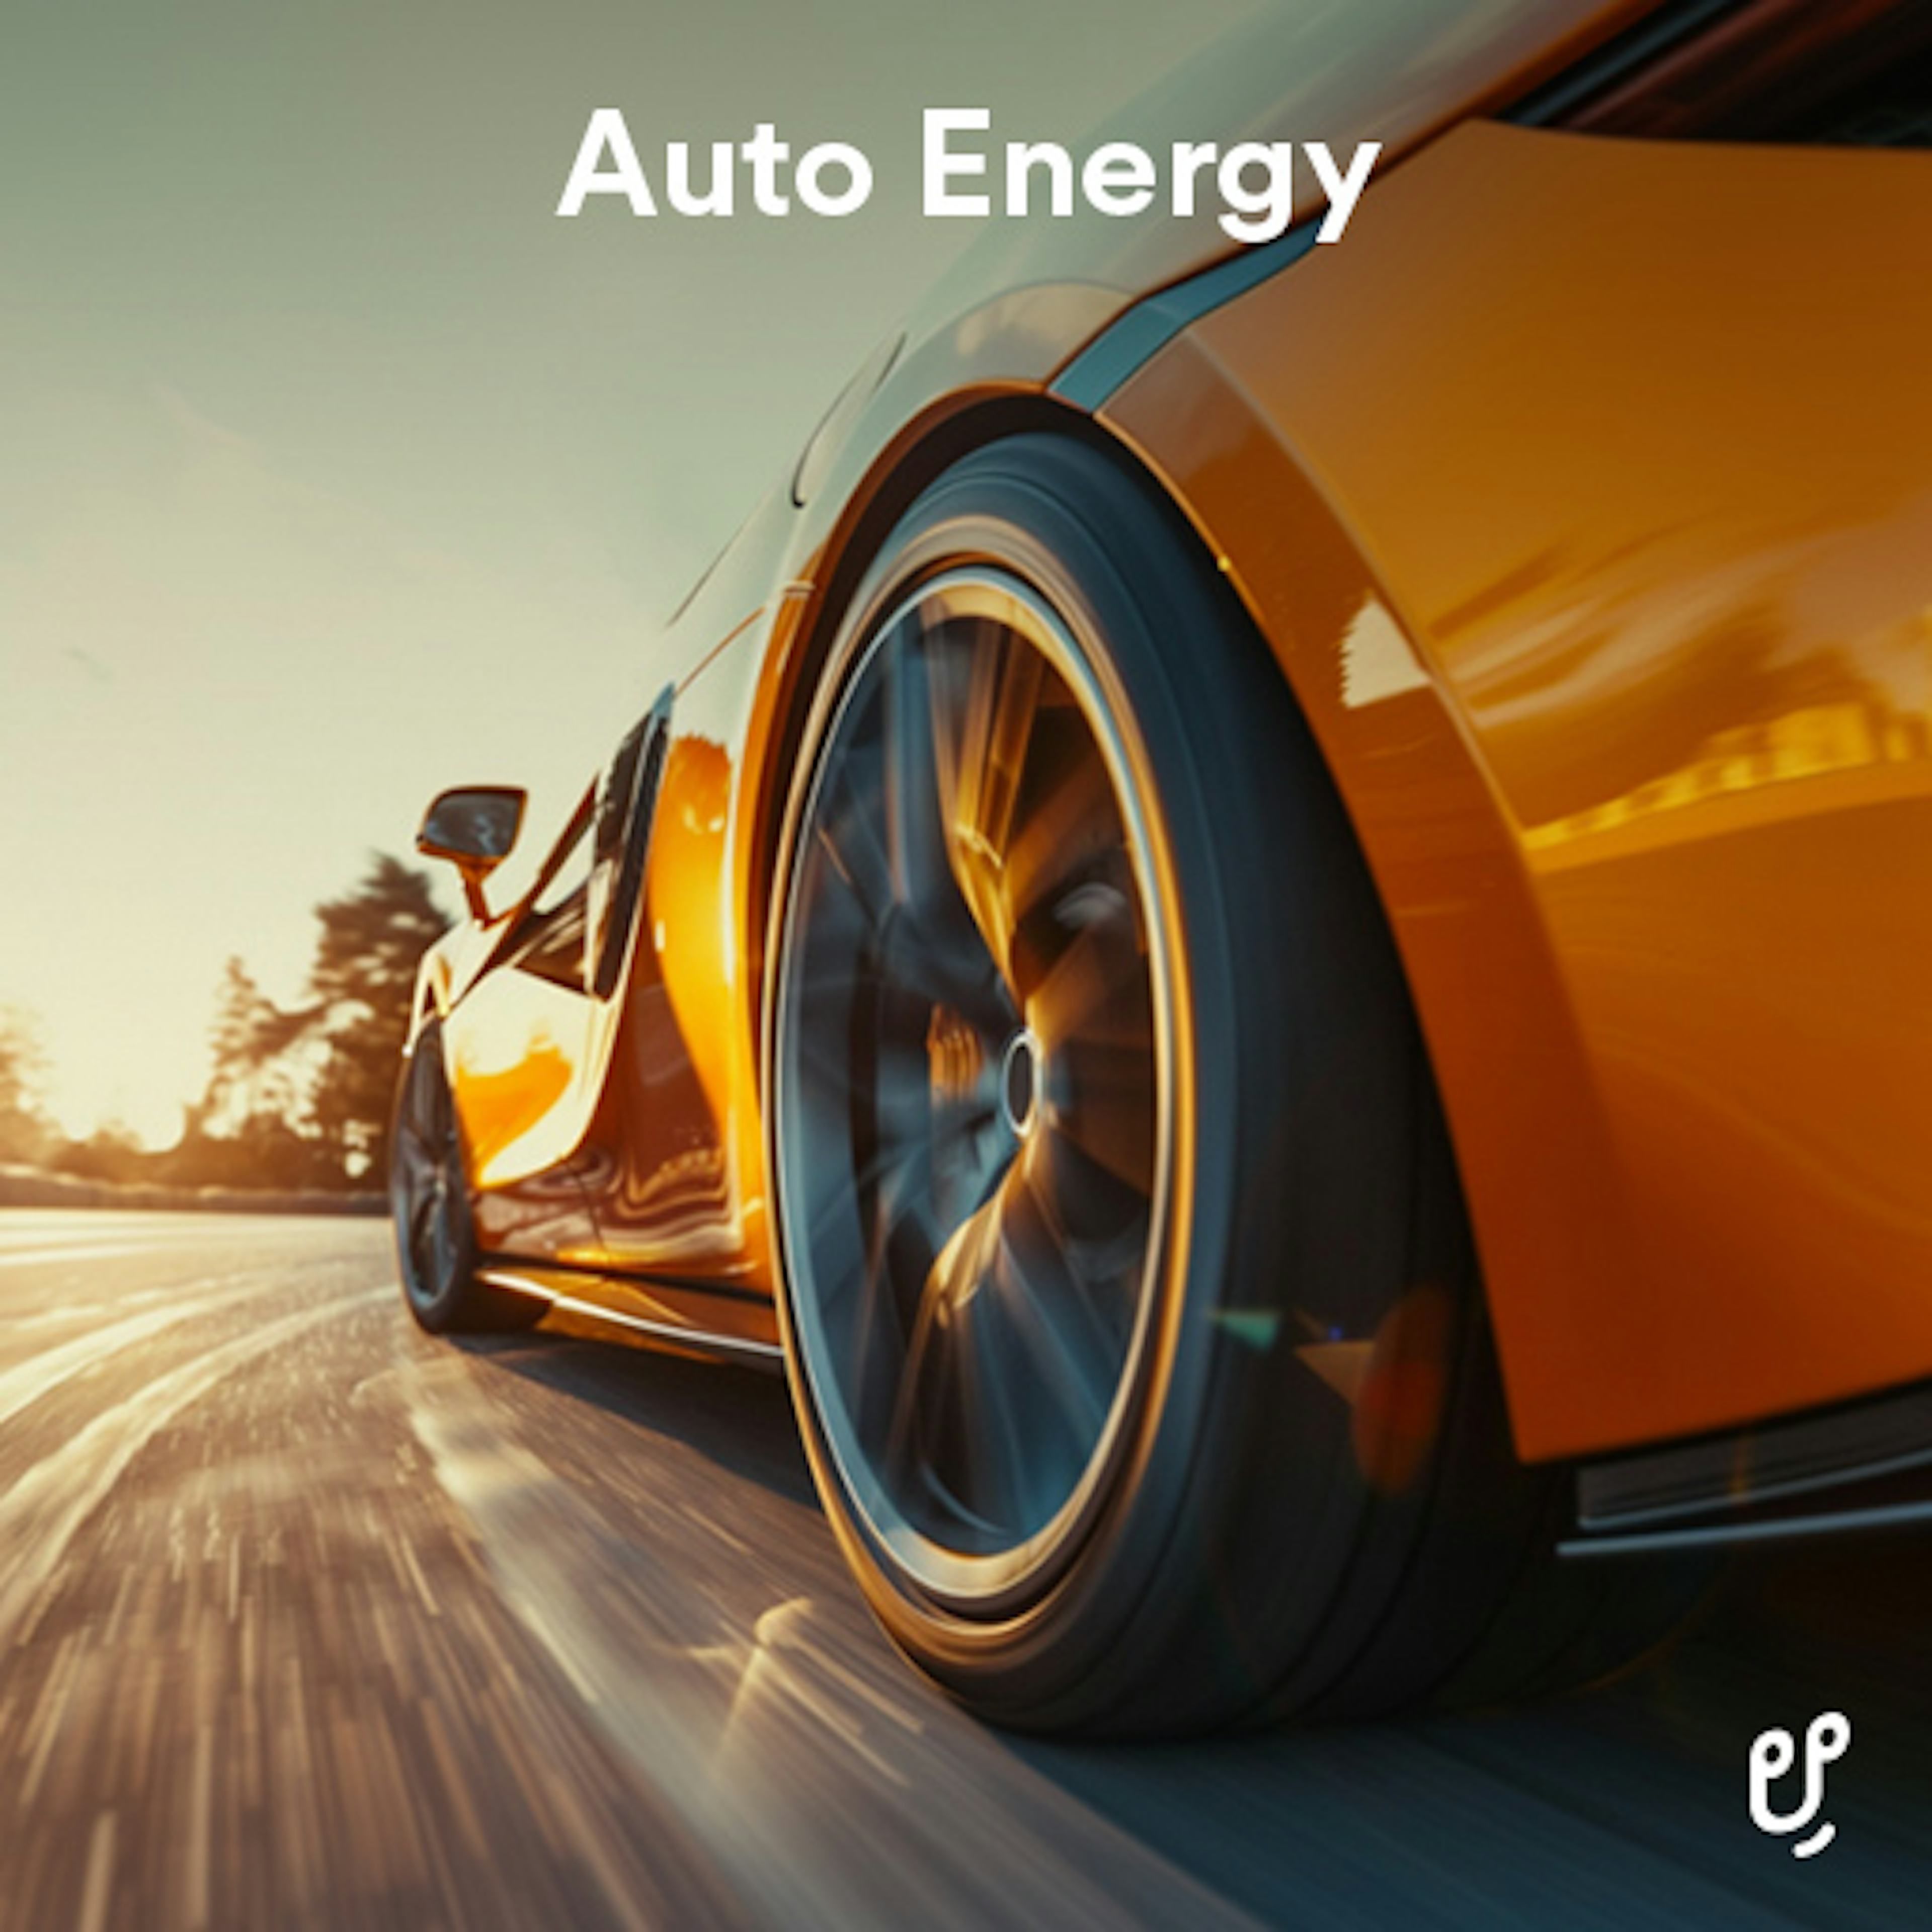 Auto Energy artwork